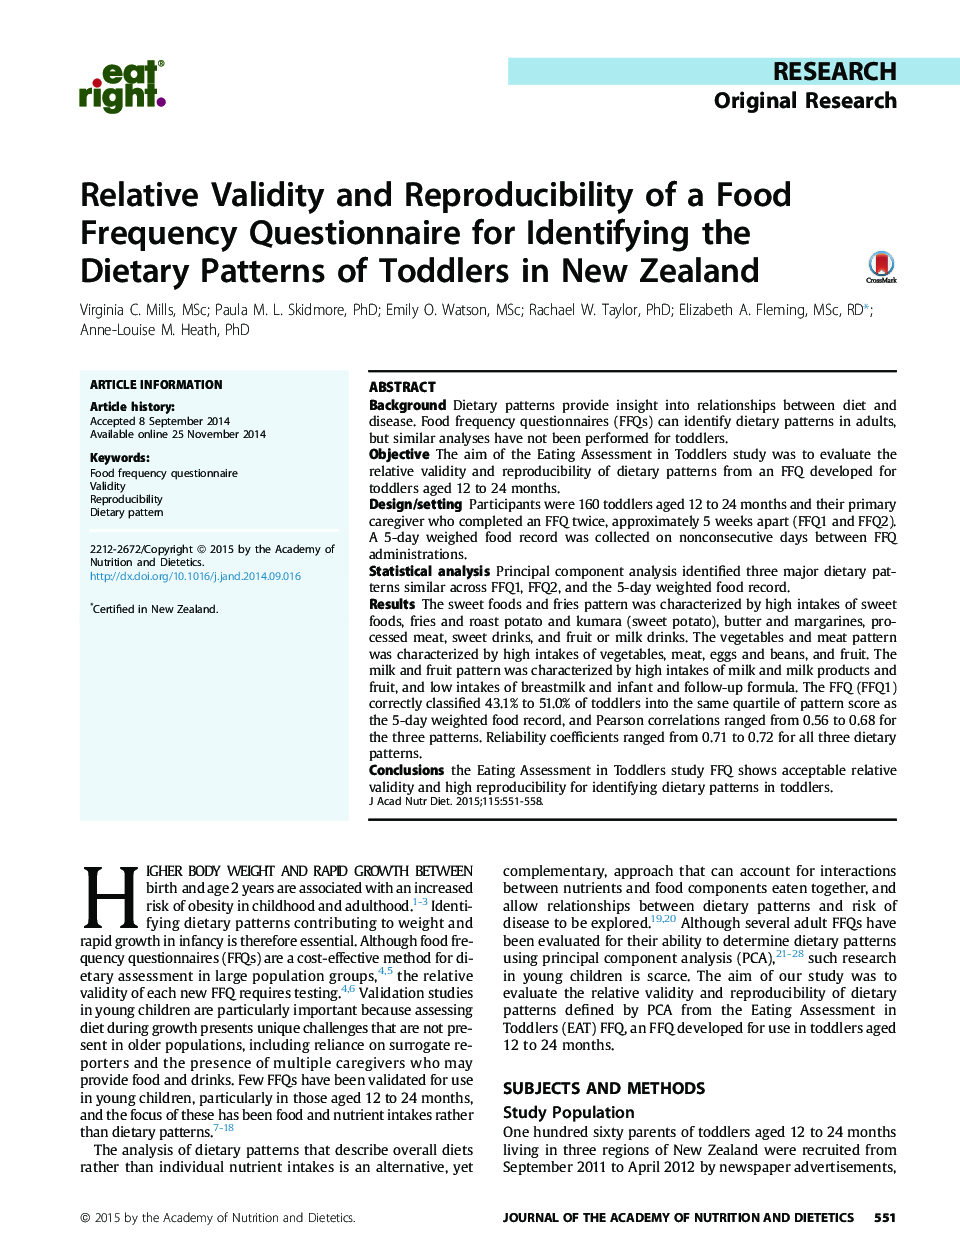 اعتبار نسبی و تکرار پذیری یک پرسشنامه فراوانی غذایی برای شناسایی الگوهای غذایی کودکان نوپا در نیوزیلند